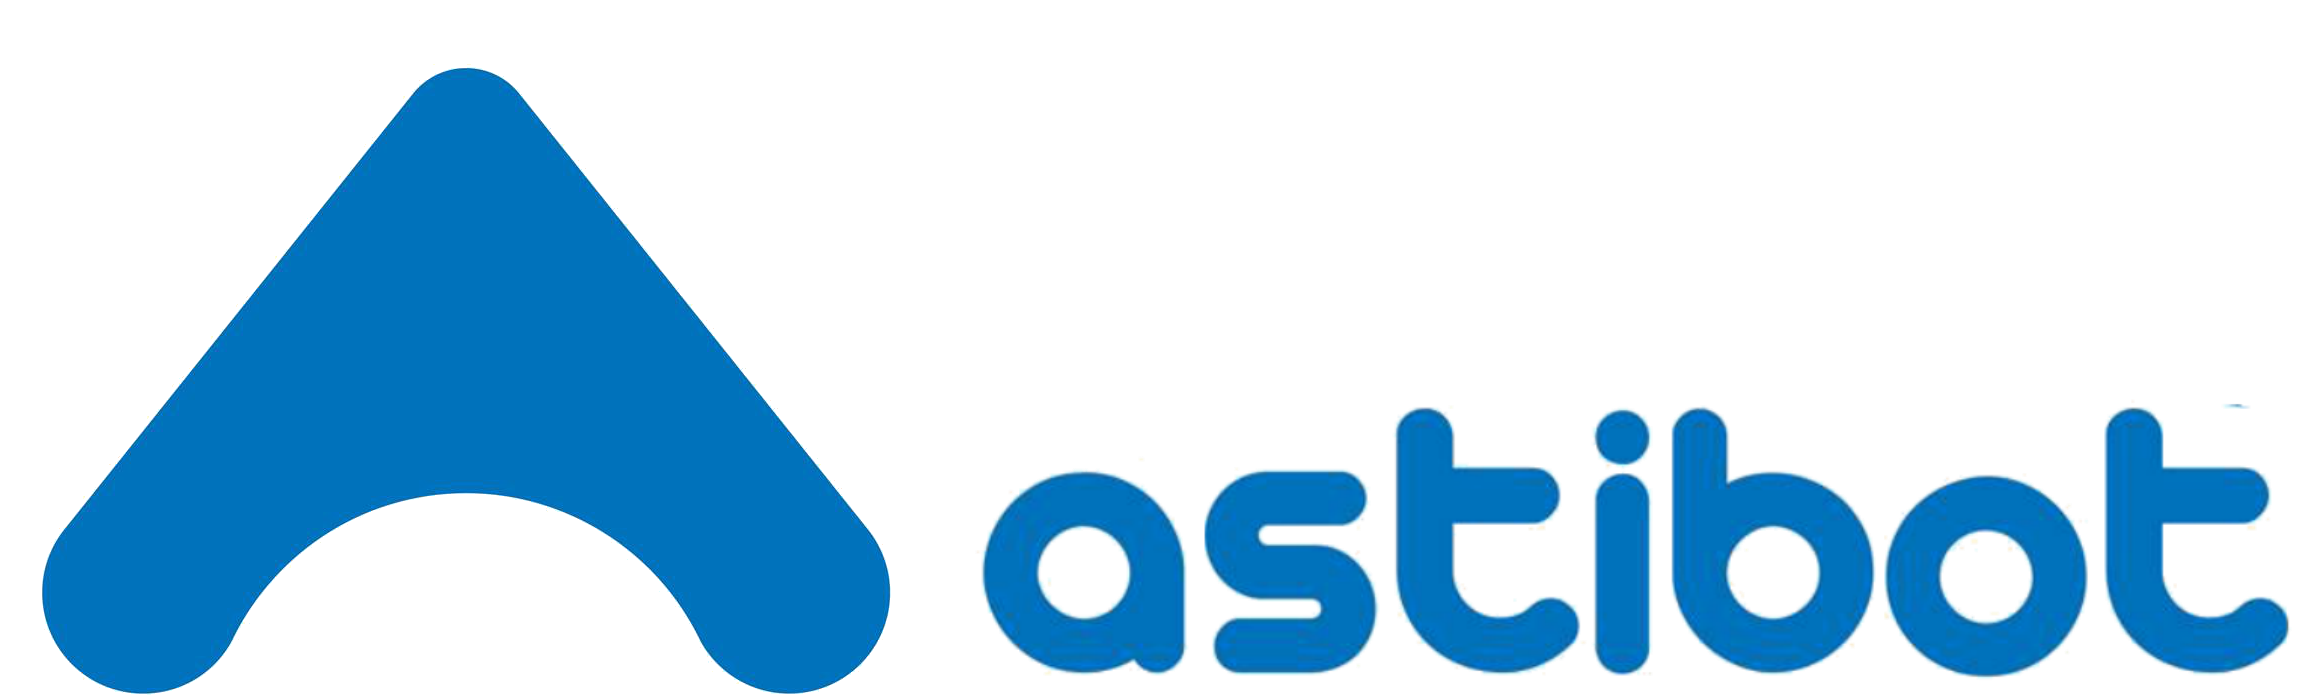 Astibot - Proyectos de Ingeniería Informática, Robótica y Domótica